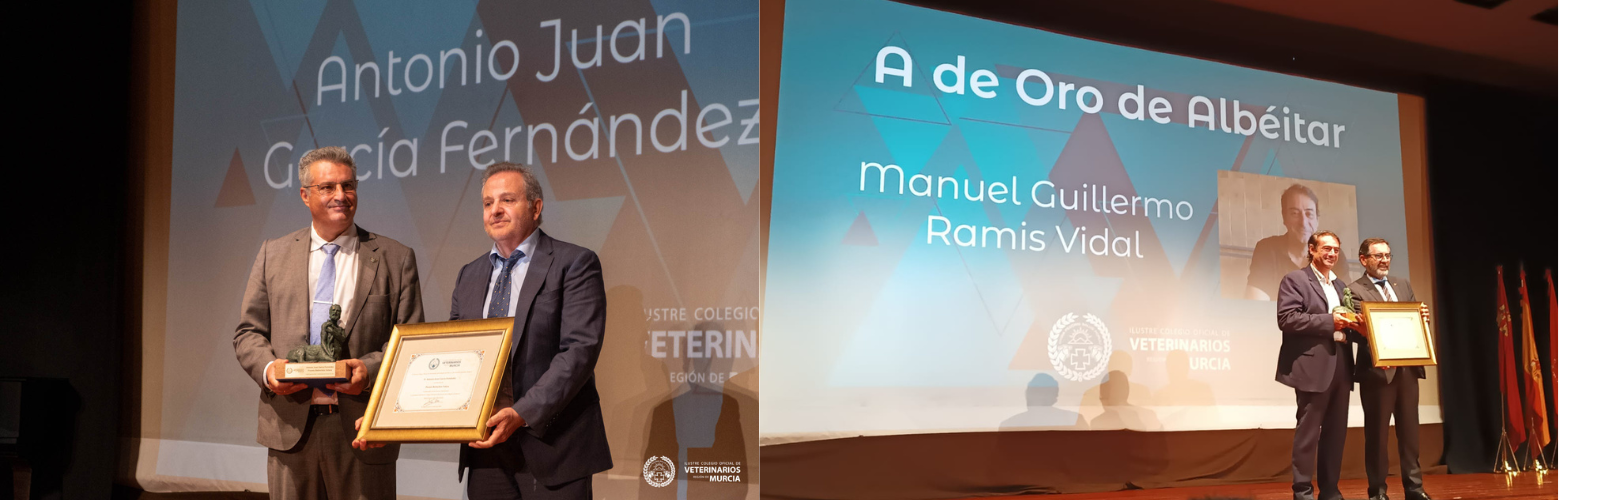 Los profesores Antonio Juan García y Guillermo Ramis reciben el reconocimiento del Colegio de Veterinarios de Murcia